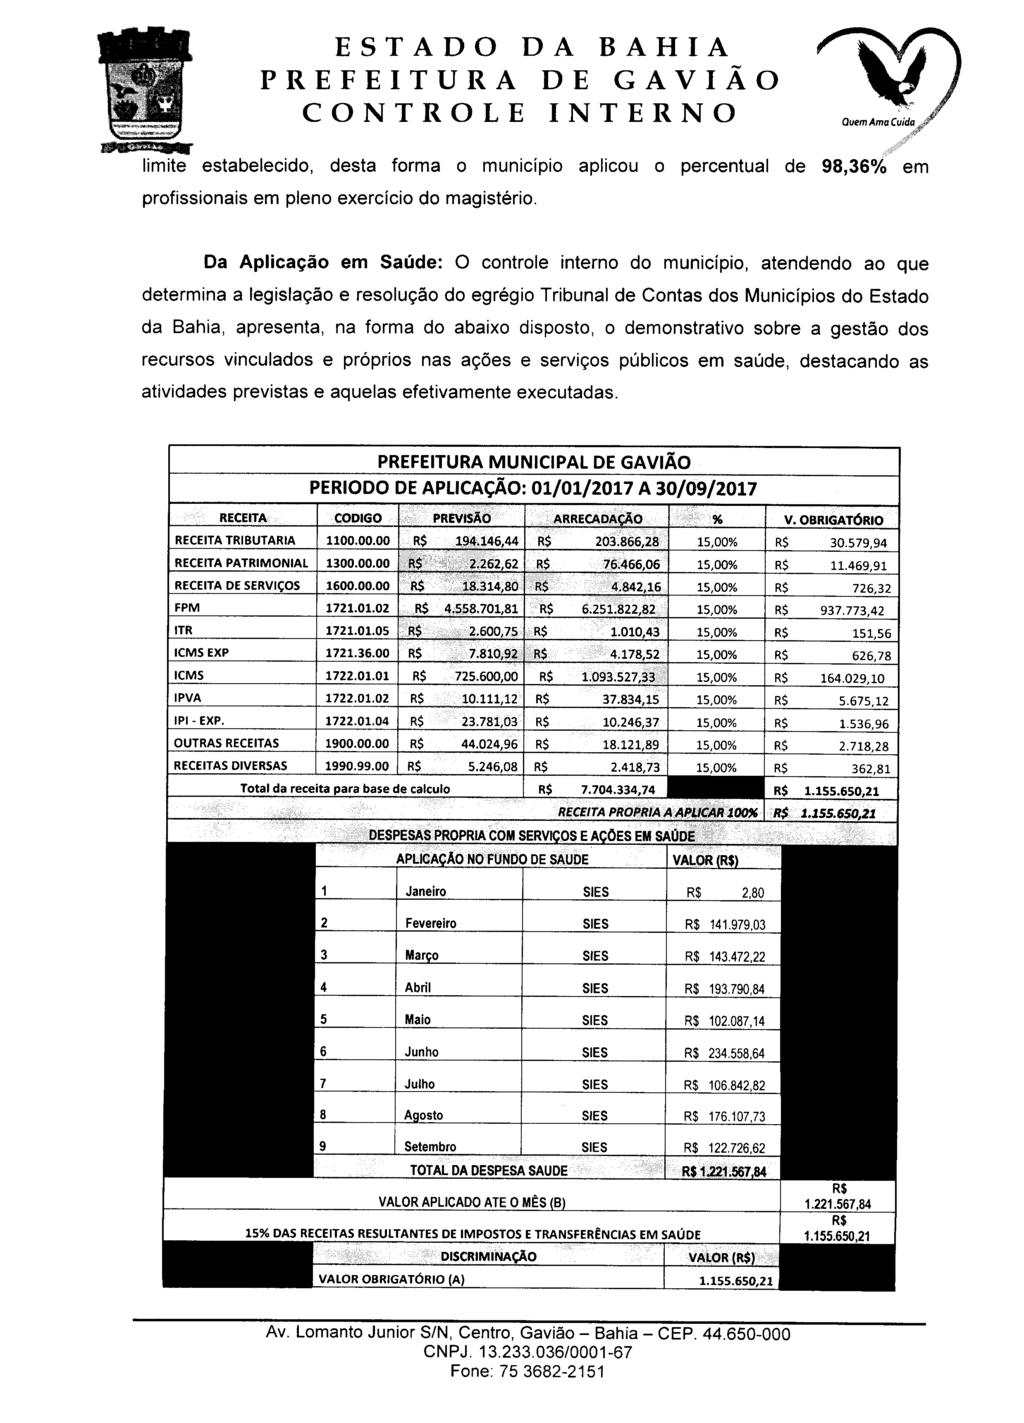 Quem Ama Cuida " '<ar<ta limite estabelecido, desta forma o município aplicou o percentual de 98,36% em profissionais em pleno exercício do magistério.